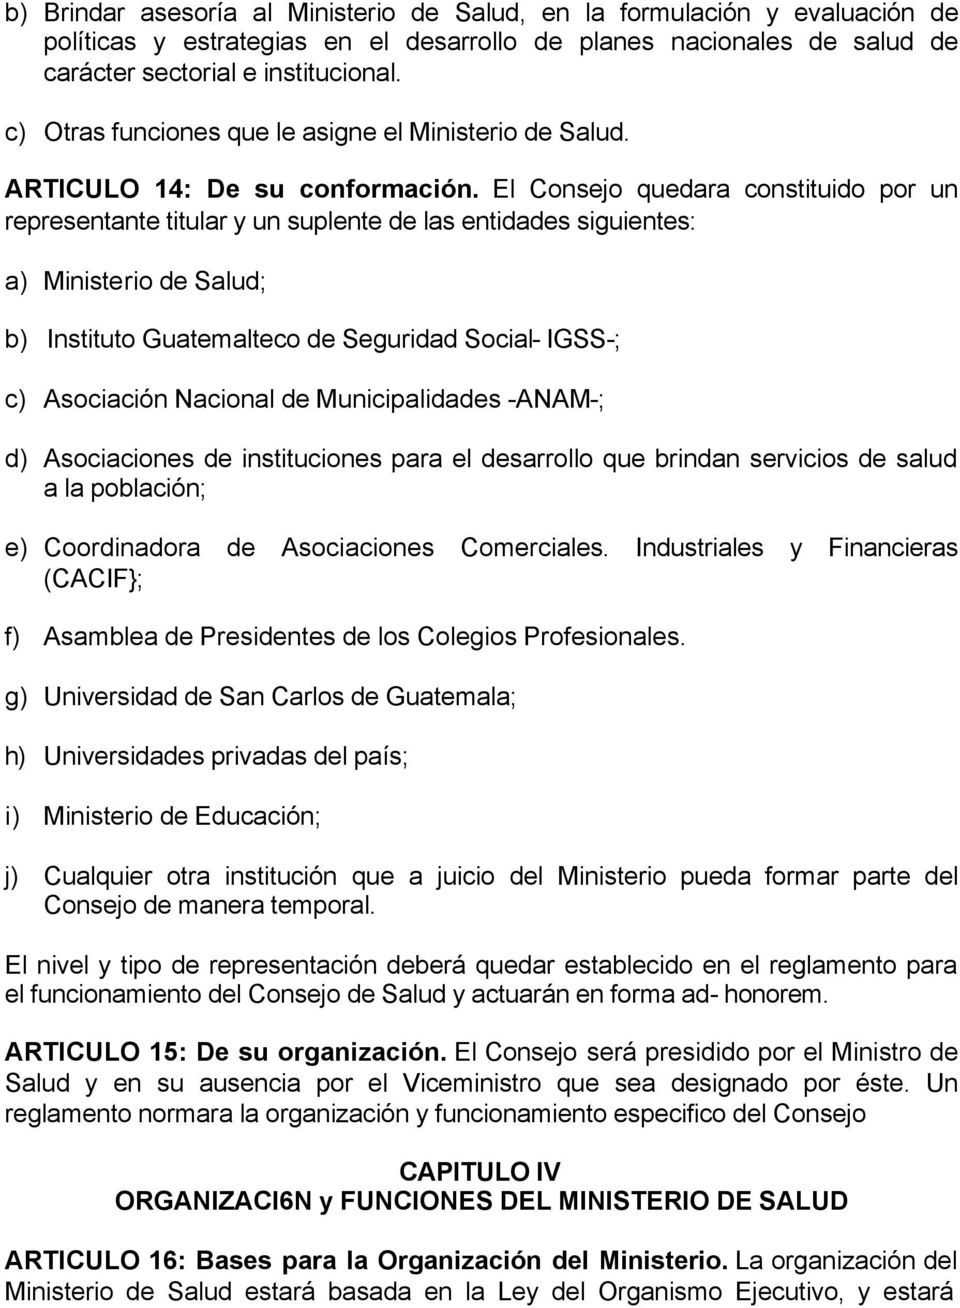 El Consejo quedara constituido por un representante titular y un suplente de las entidades siguientes: a) Ministerio de Salud; b) Instituto Guatemalteco de Seguridad Social- IGSS-; c) Asociación